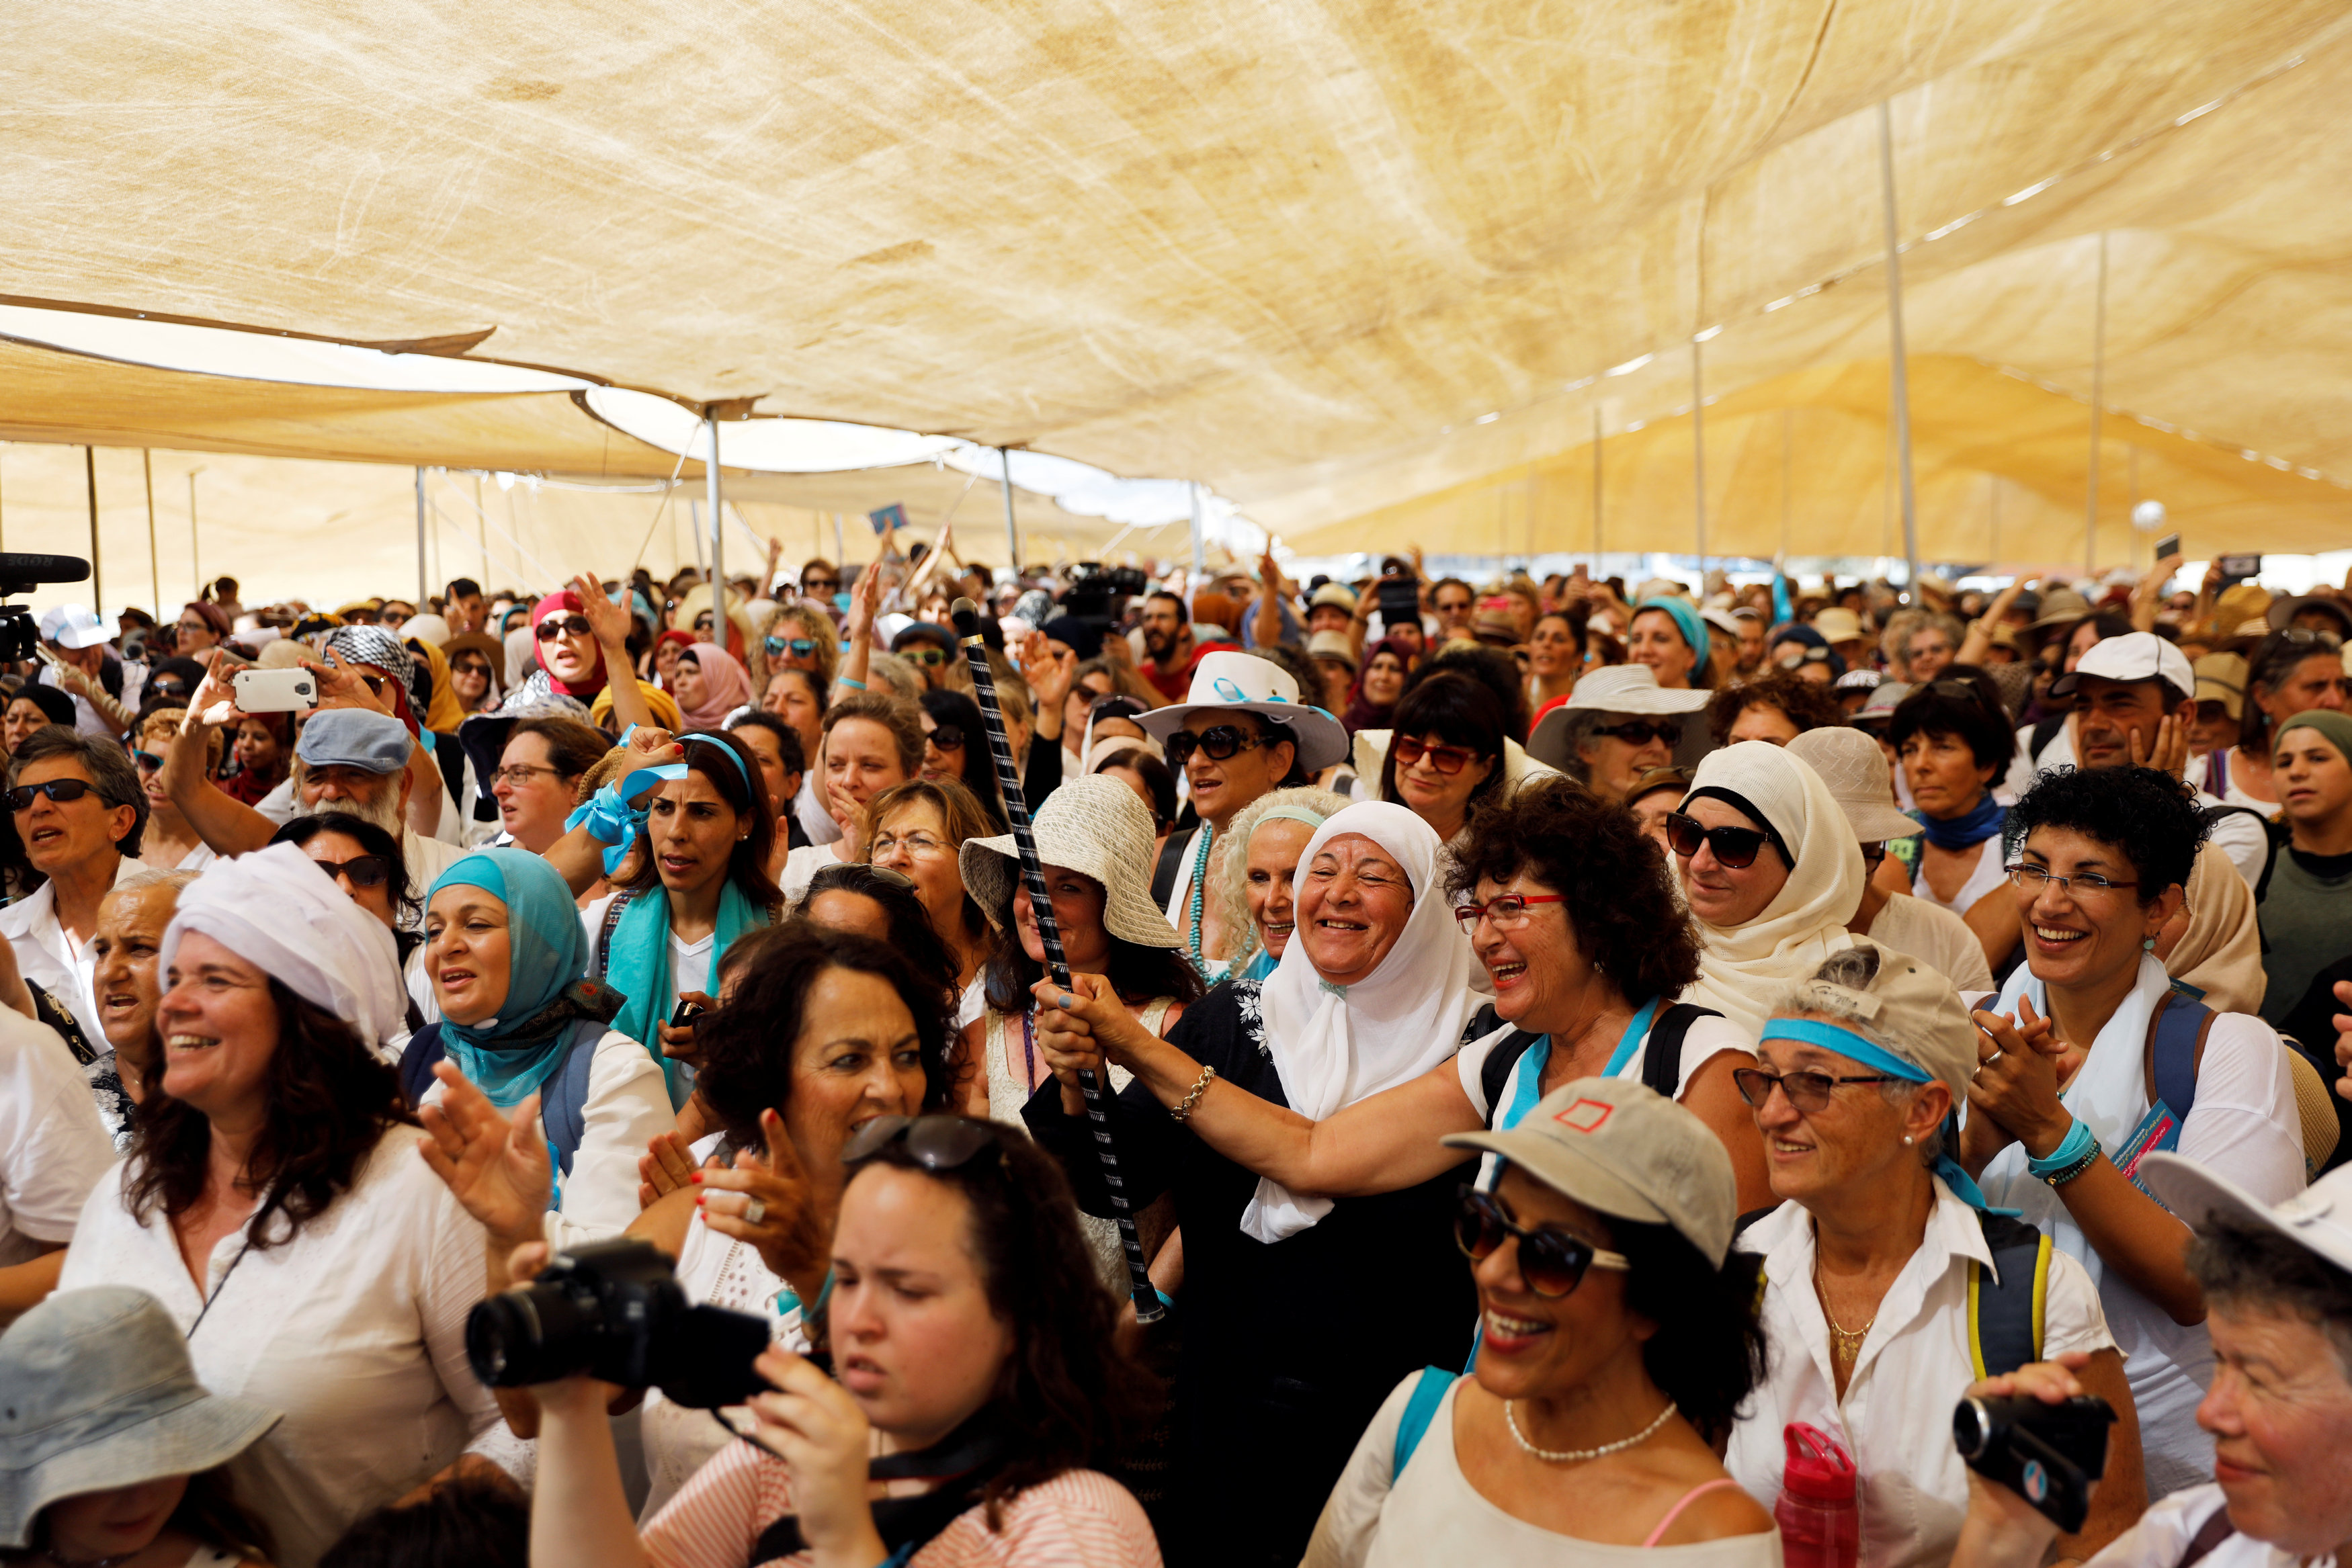 سيدات تابعات للمنظمة الرافضة للتوتر الاسرائيلى الفلسطينى يلتقطن صورا تذكارية مع سيدات فلسطينيات